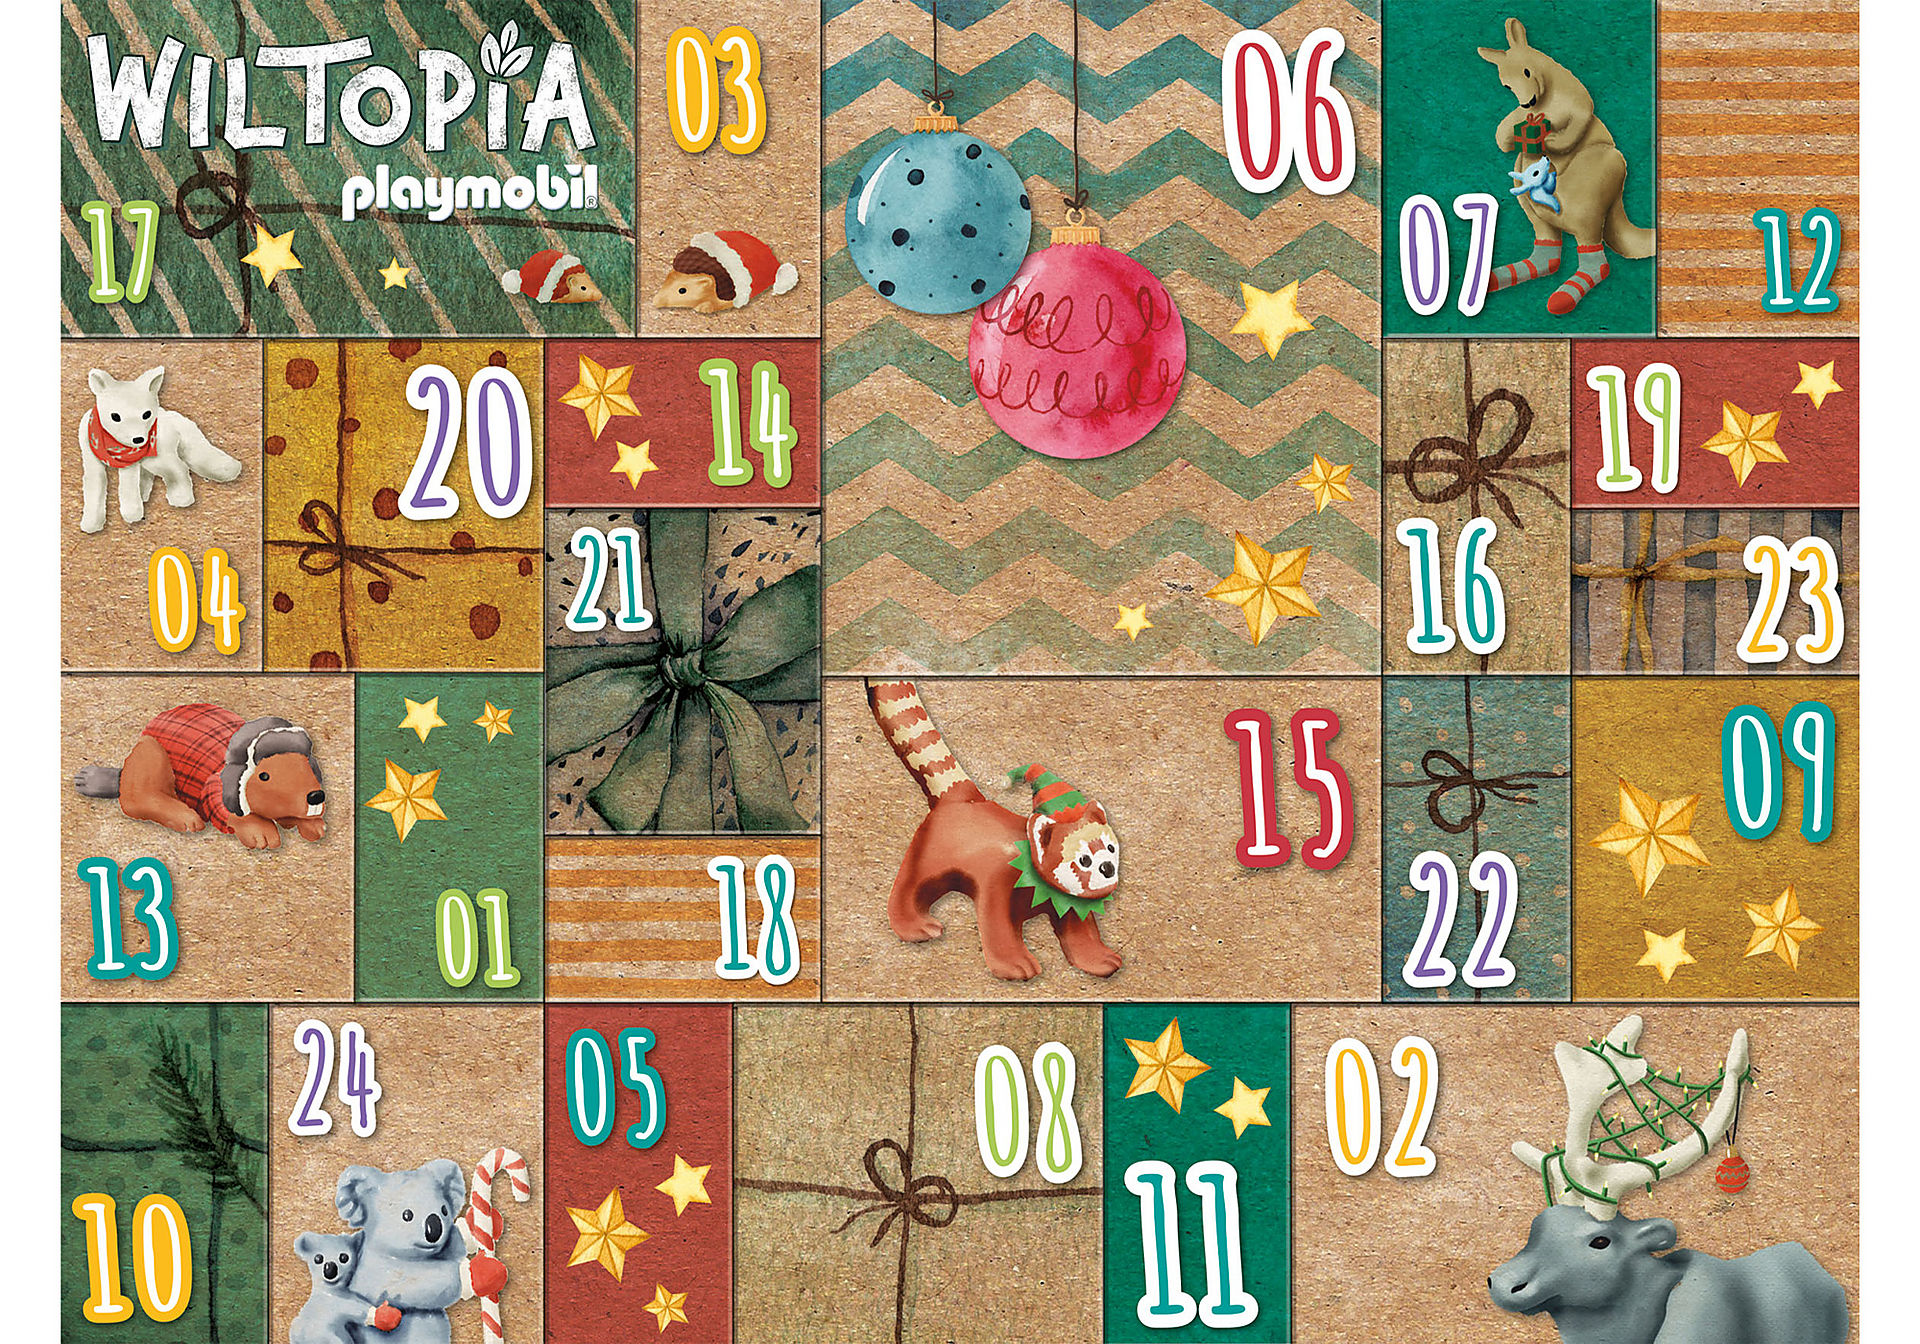 71006 Wiltopia - DIY Calendário do Advento - Via zoom image4